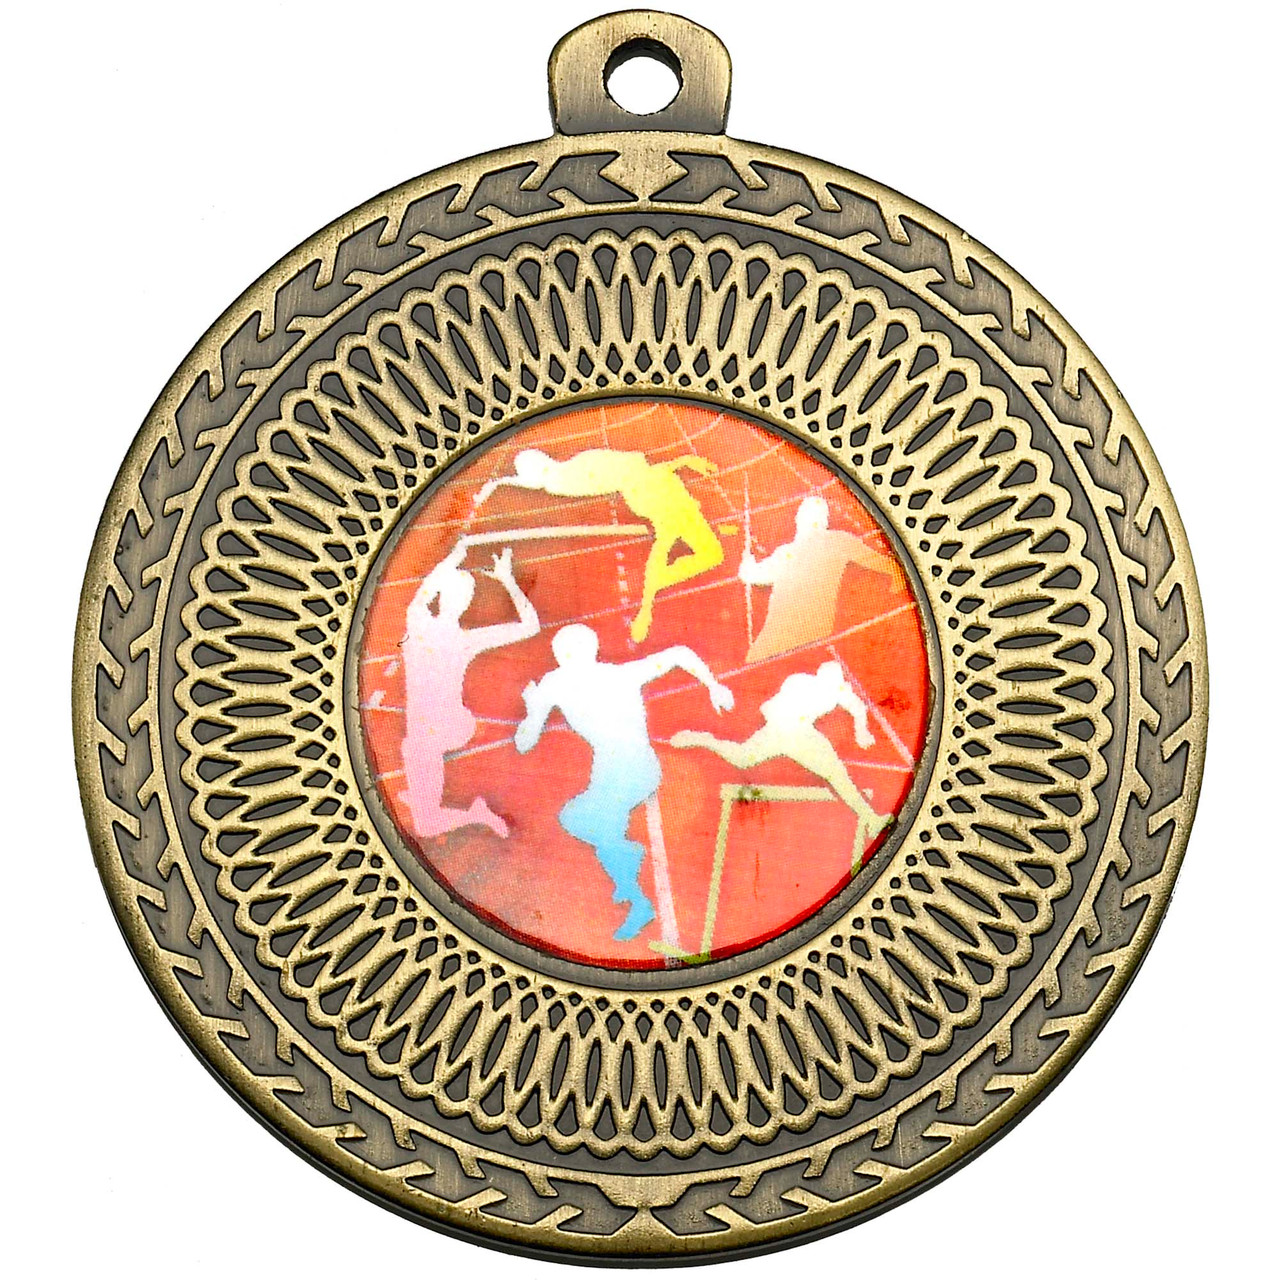 50mm Bronze Multisport Circular Medal Award